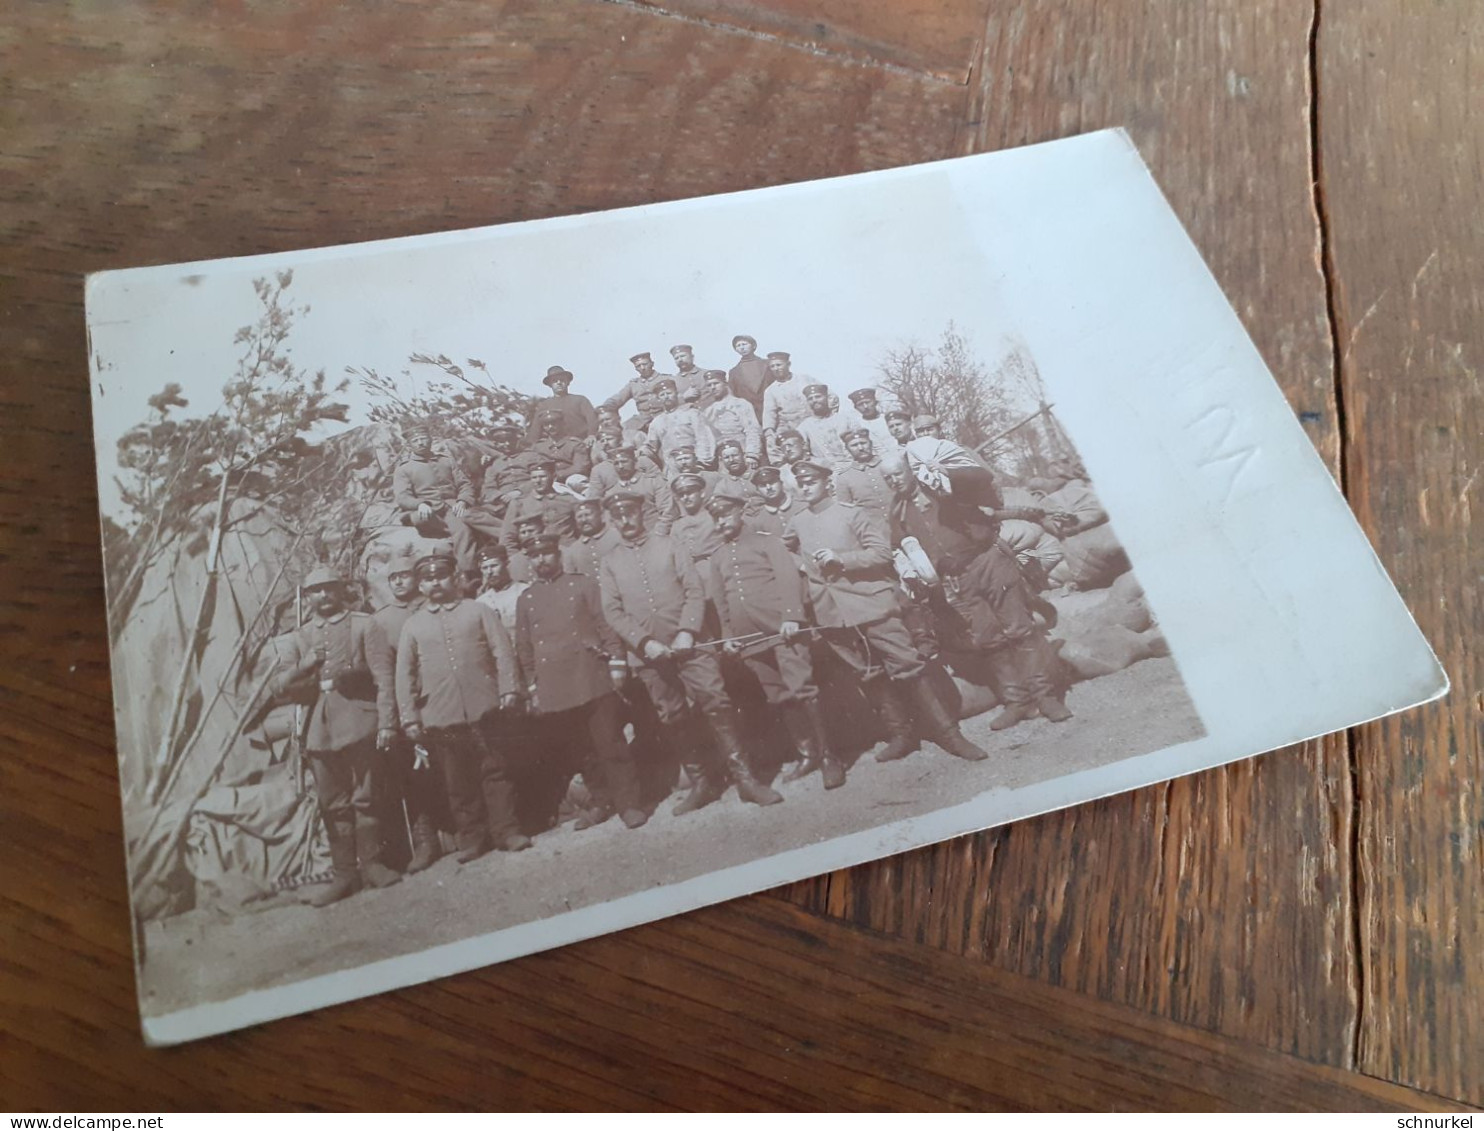 JOHANNISBURG - RUSSLAND - PREUSSISCH EYLAU - 1915 - OFFIZIERE SOLDATEN In POSE - BRUNO An MARTHA REUST Nach GRAUDENZ - War, Military